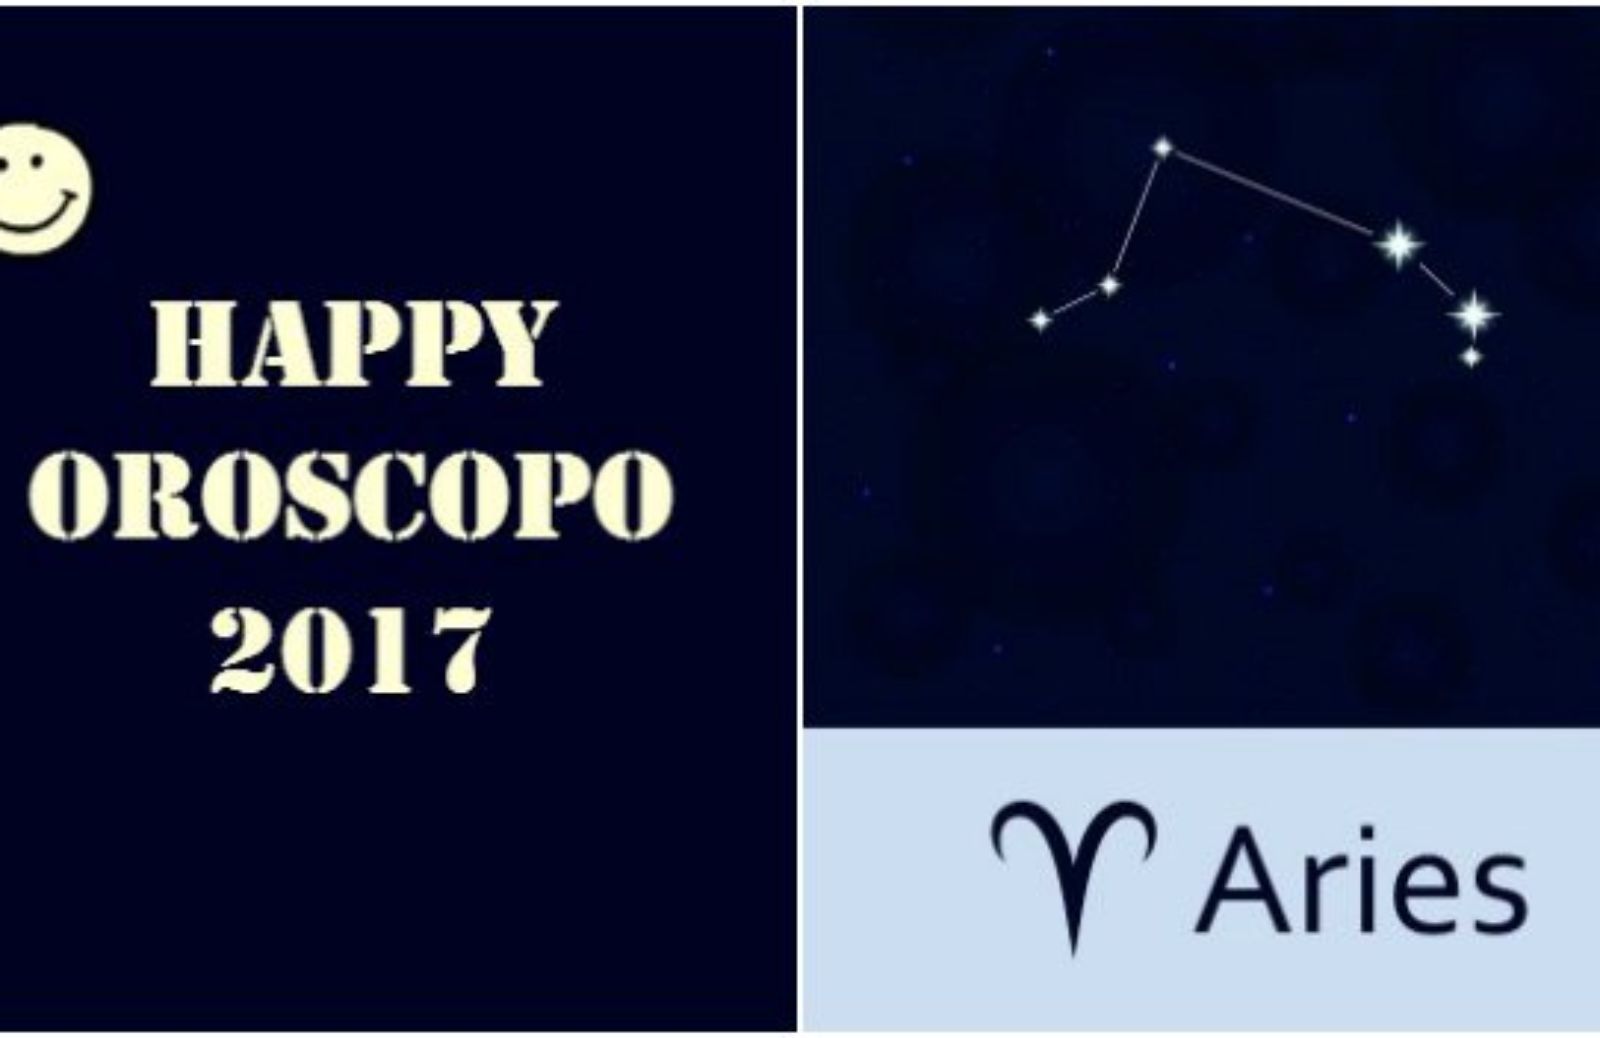 Happy Oroscopo 2017: il segno dell'Ariete